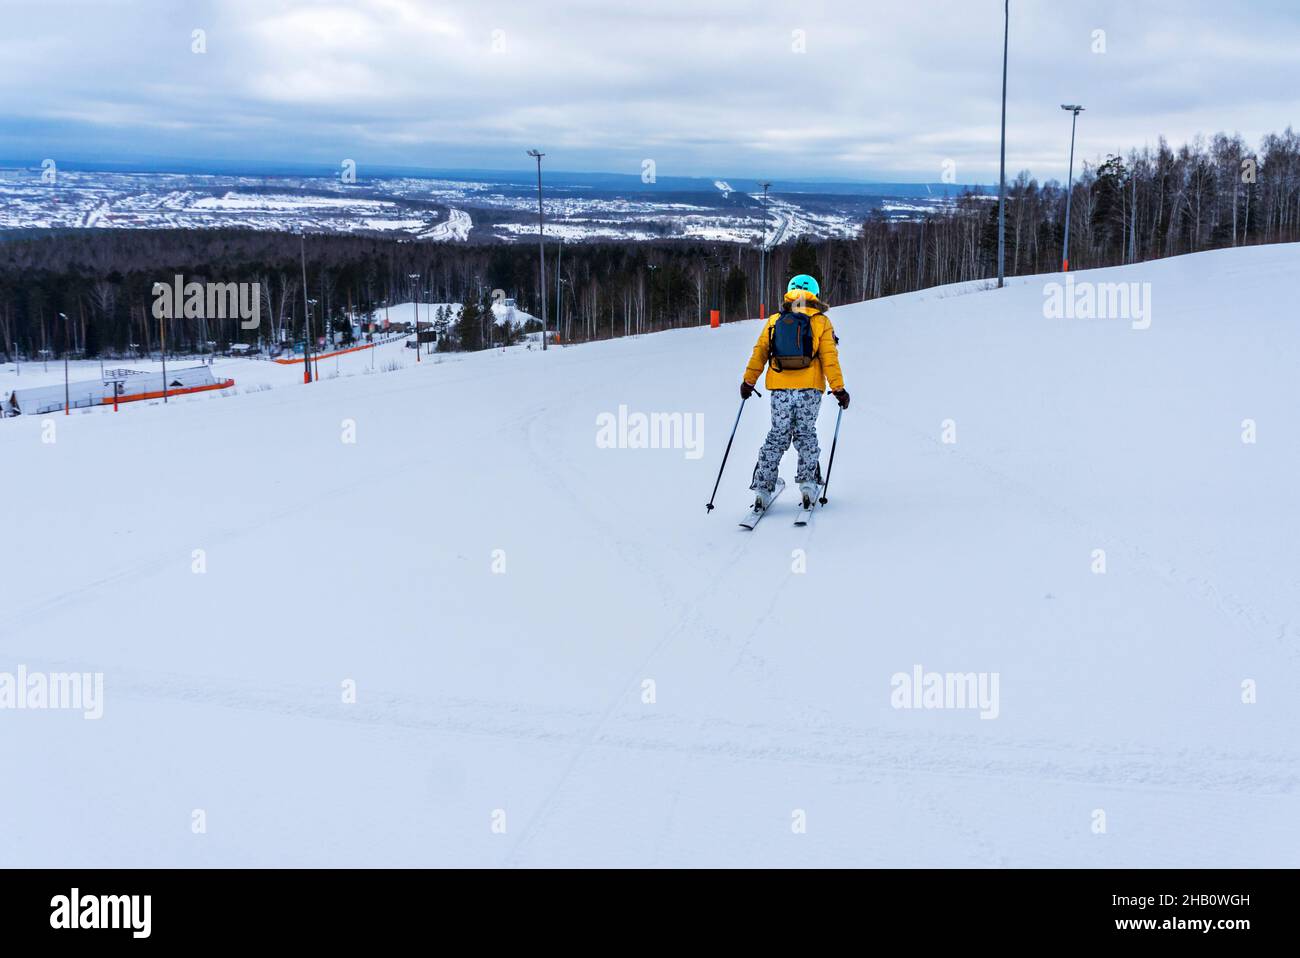 Jeune femme en blouson jaune et casque de ski ski ski ski sur une piste de montagne, sports d'hiver, ski alpin en plein air, vie active saine Banque D'Images